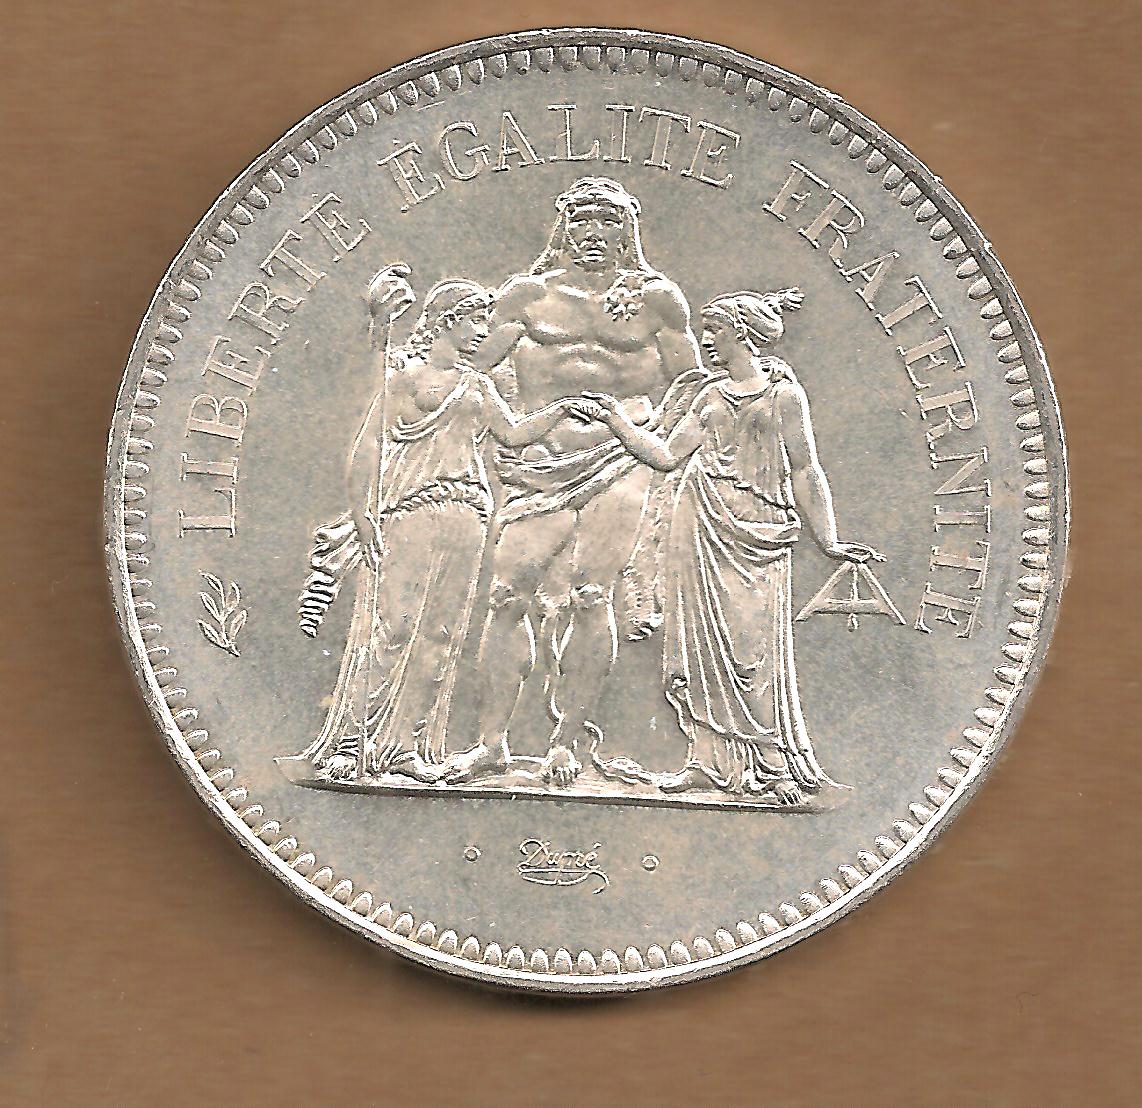  France - 50 Francs 1974   